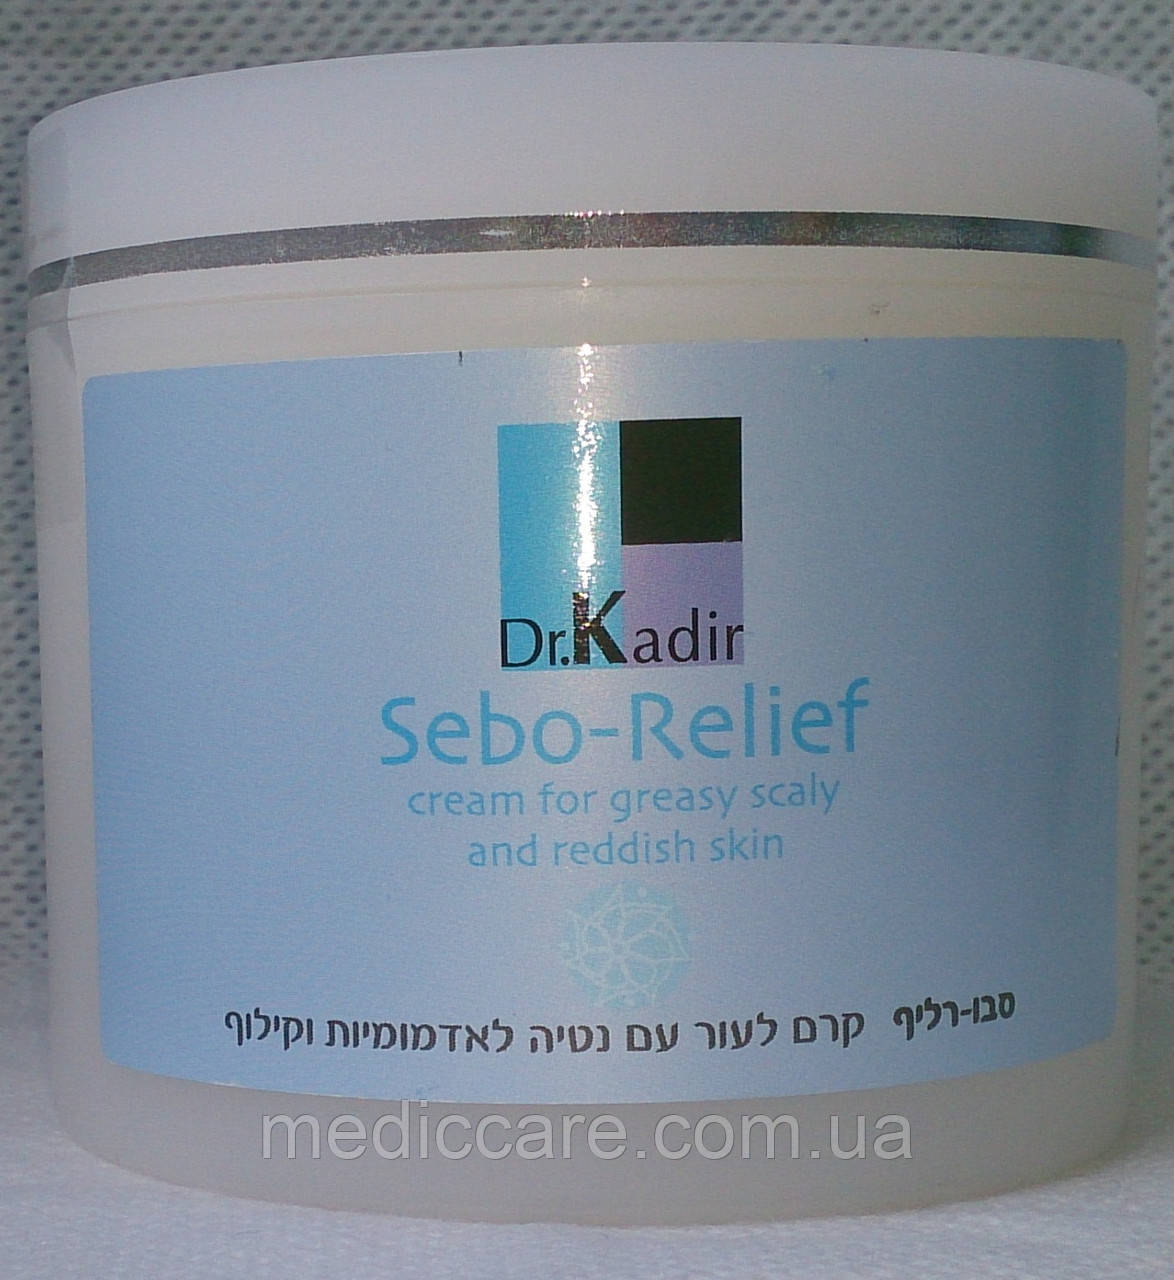 Себорельєф крем для жирної шкіри 250 мл. Dr.Kadir